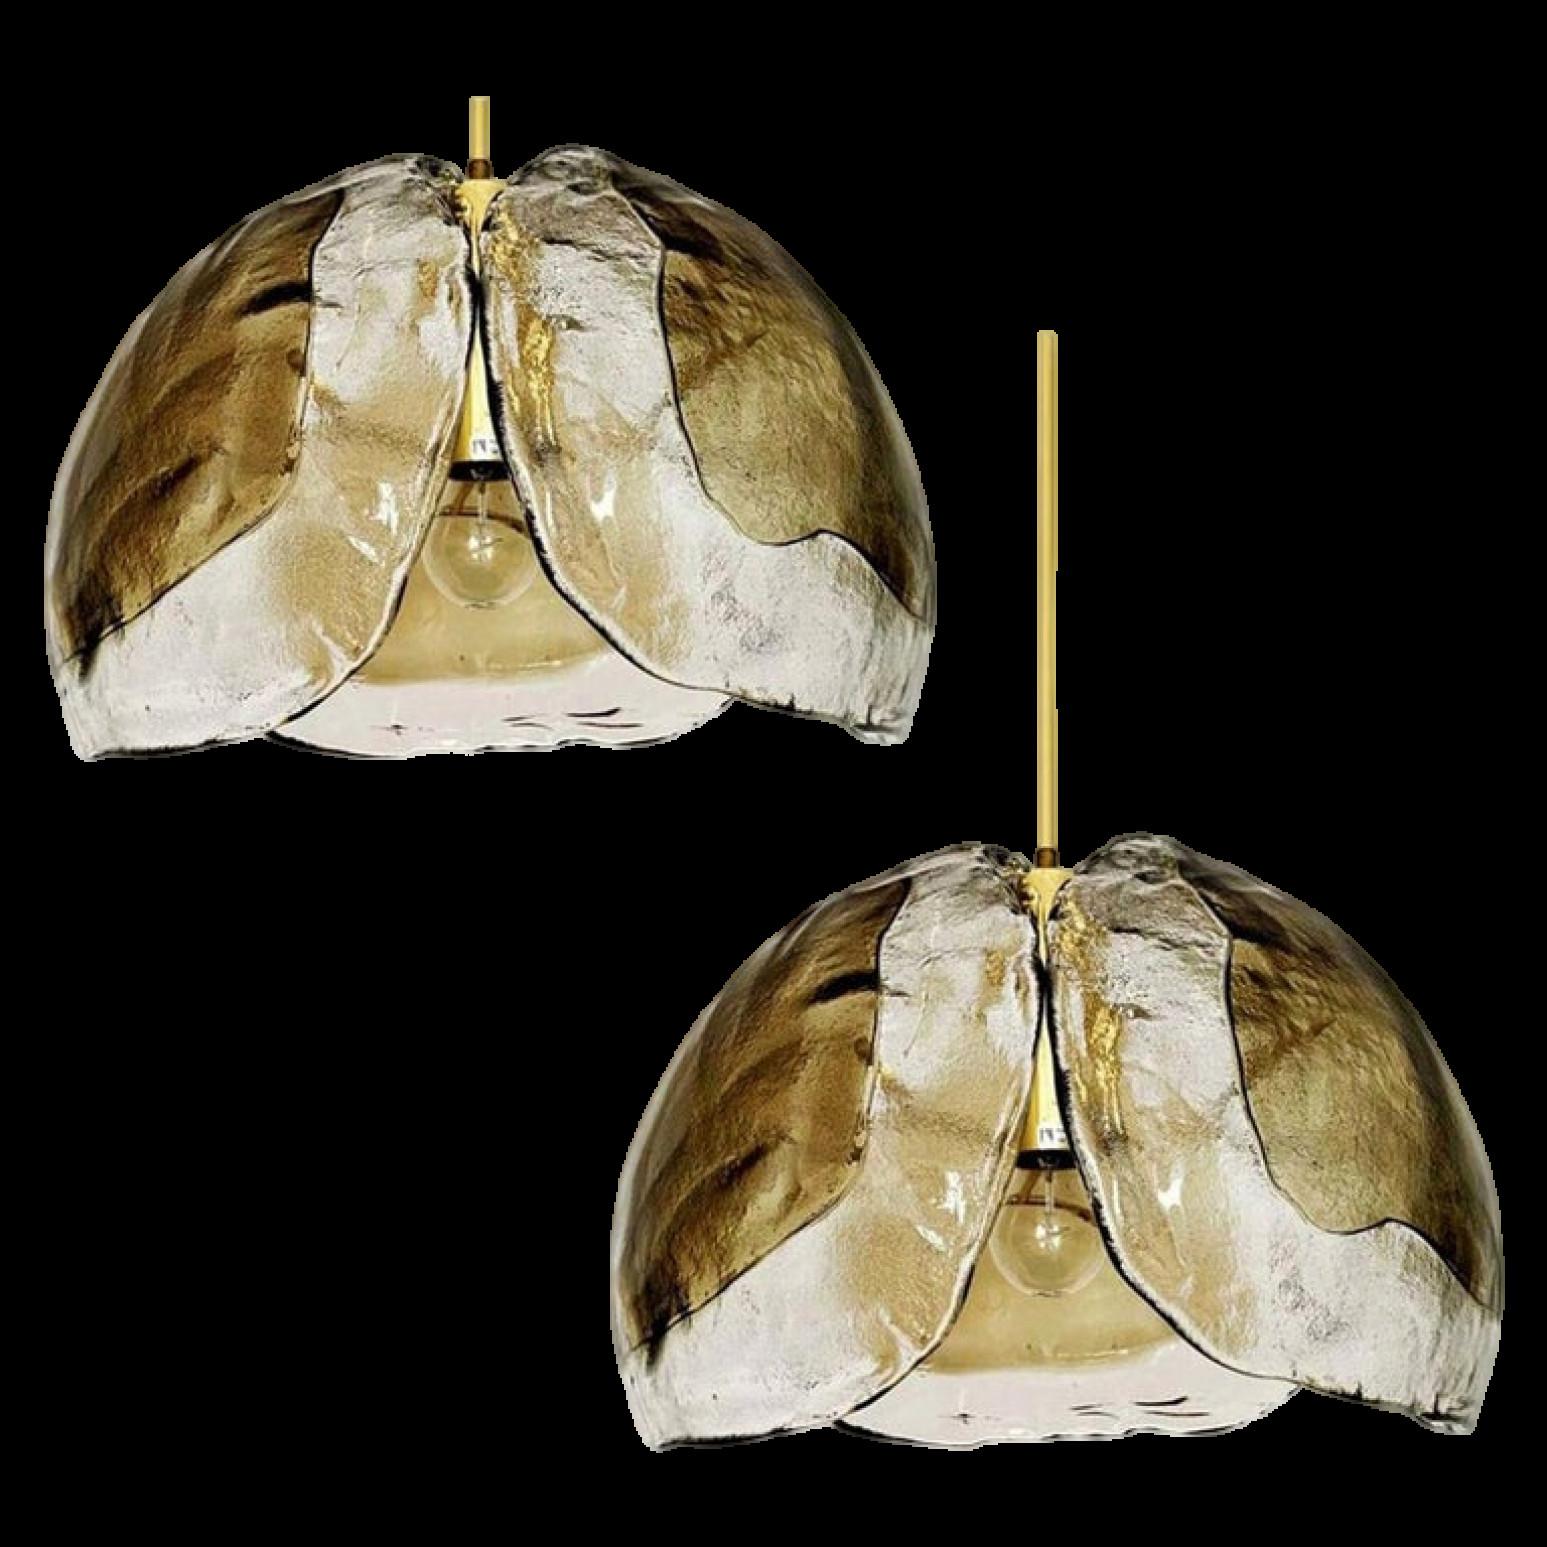 Une paire de très belles lampes suspendues fabriquées au milieu du siècle, vers 1970. Trois verres de Murano aux tons fumés ou ambrés sont montés sur un luminaire en laiton. Livraison avec chaîne de minerai à barres.

Les feuilles de cristal